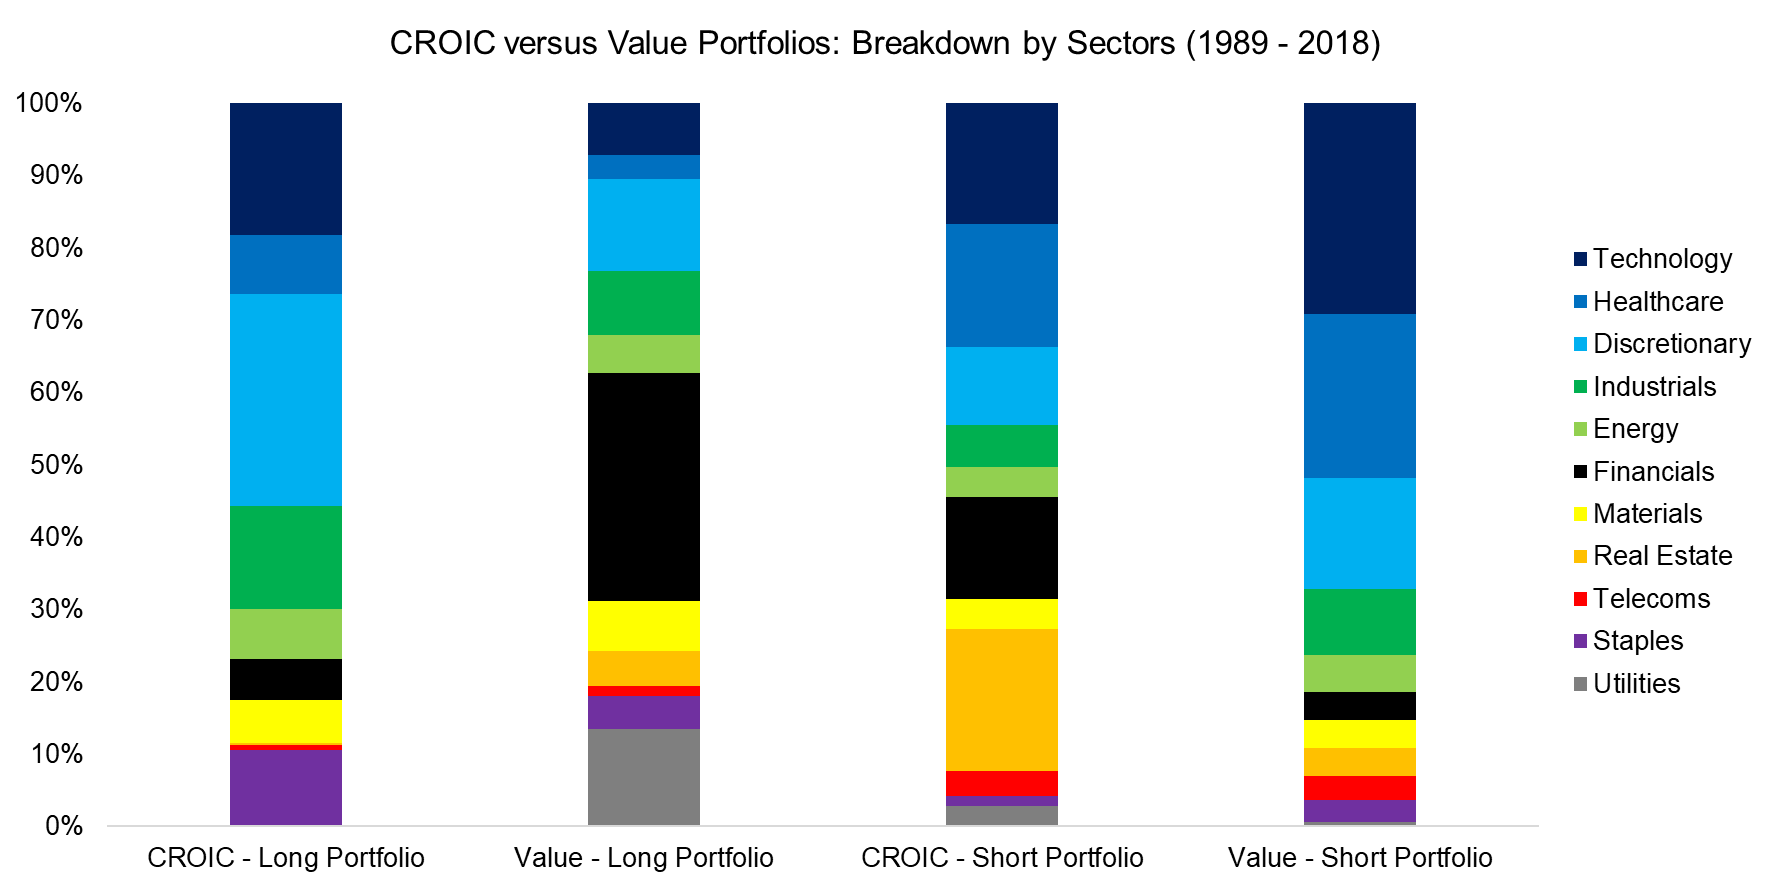 CROIC versus Value Portfolios Breakdown by Sectors (1989 - 2018)